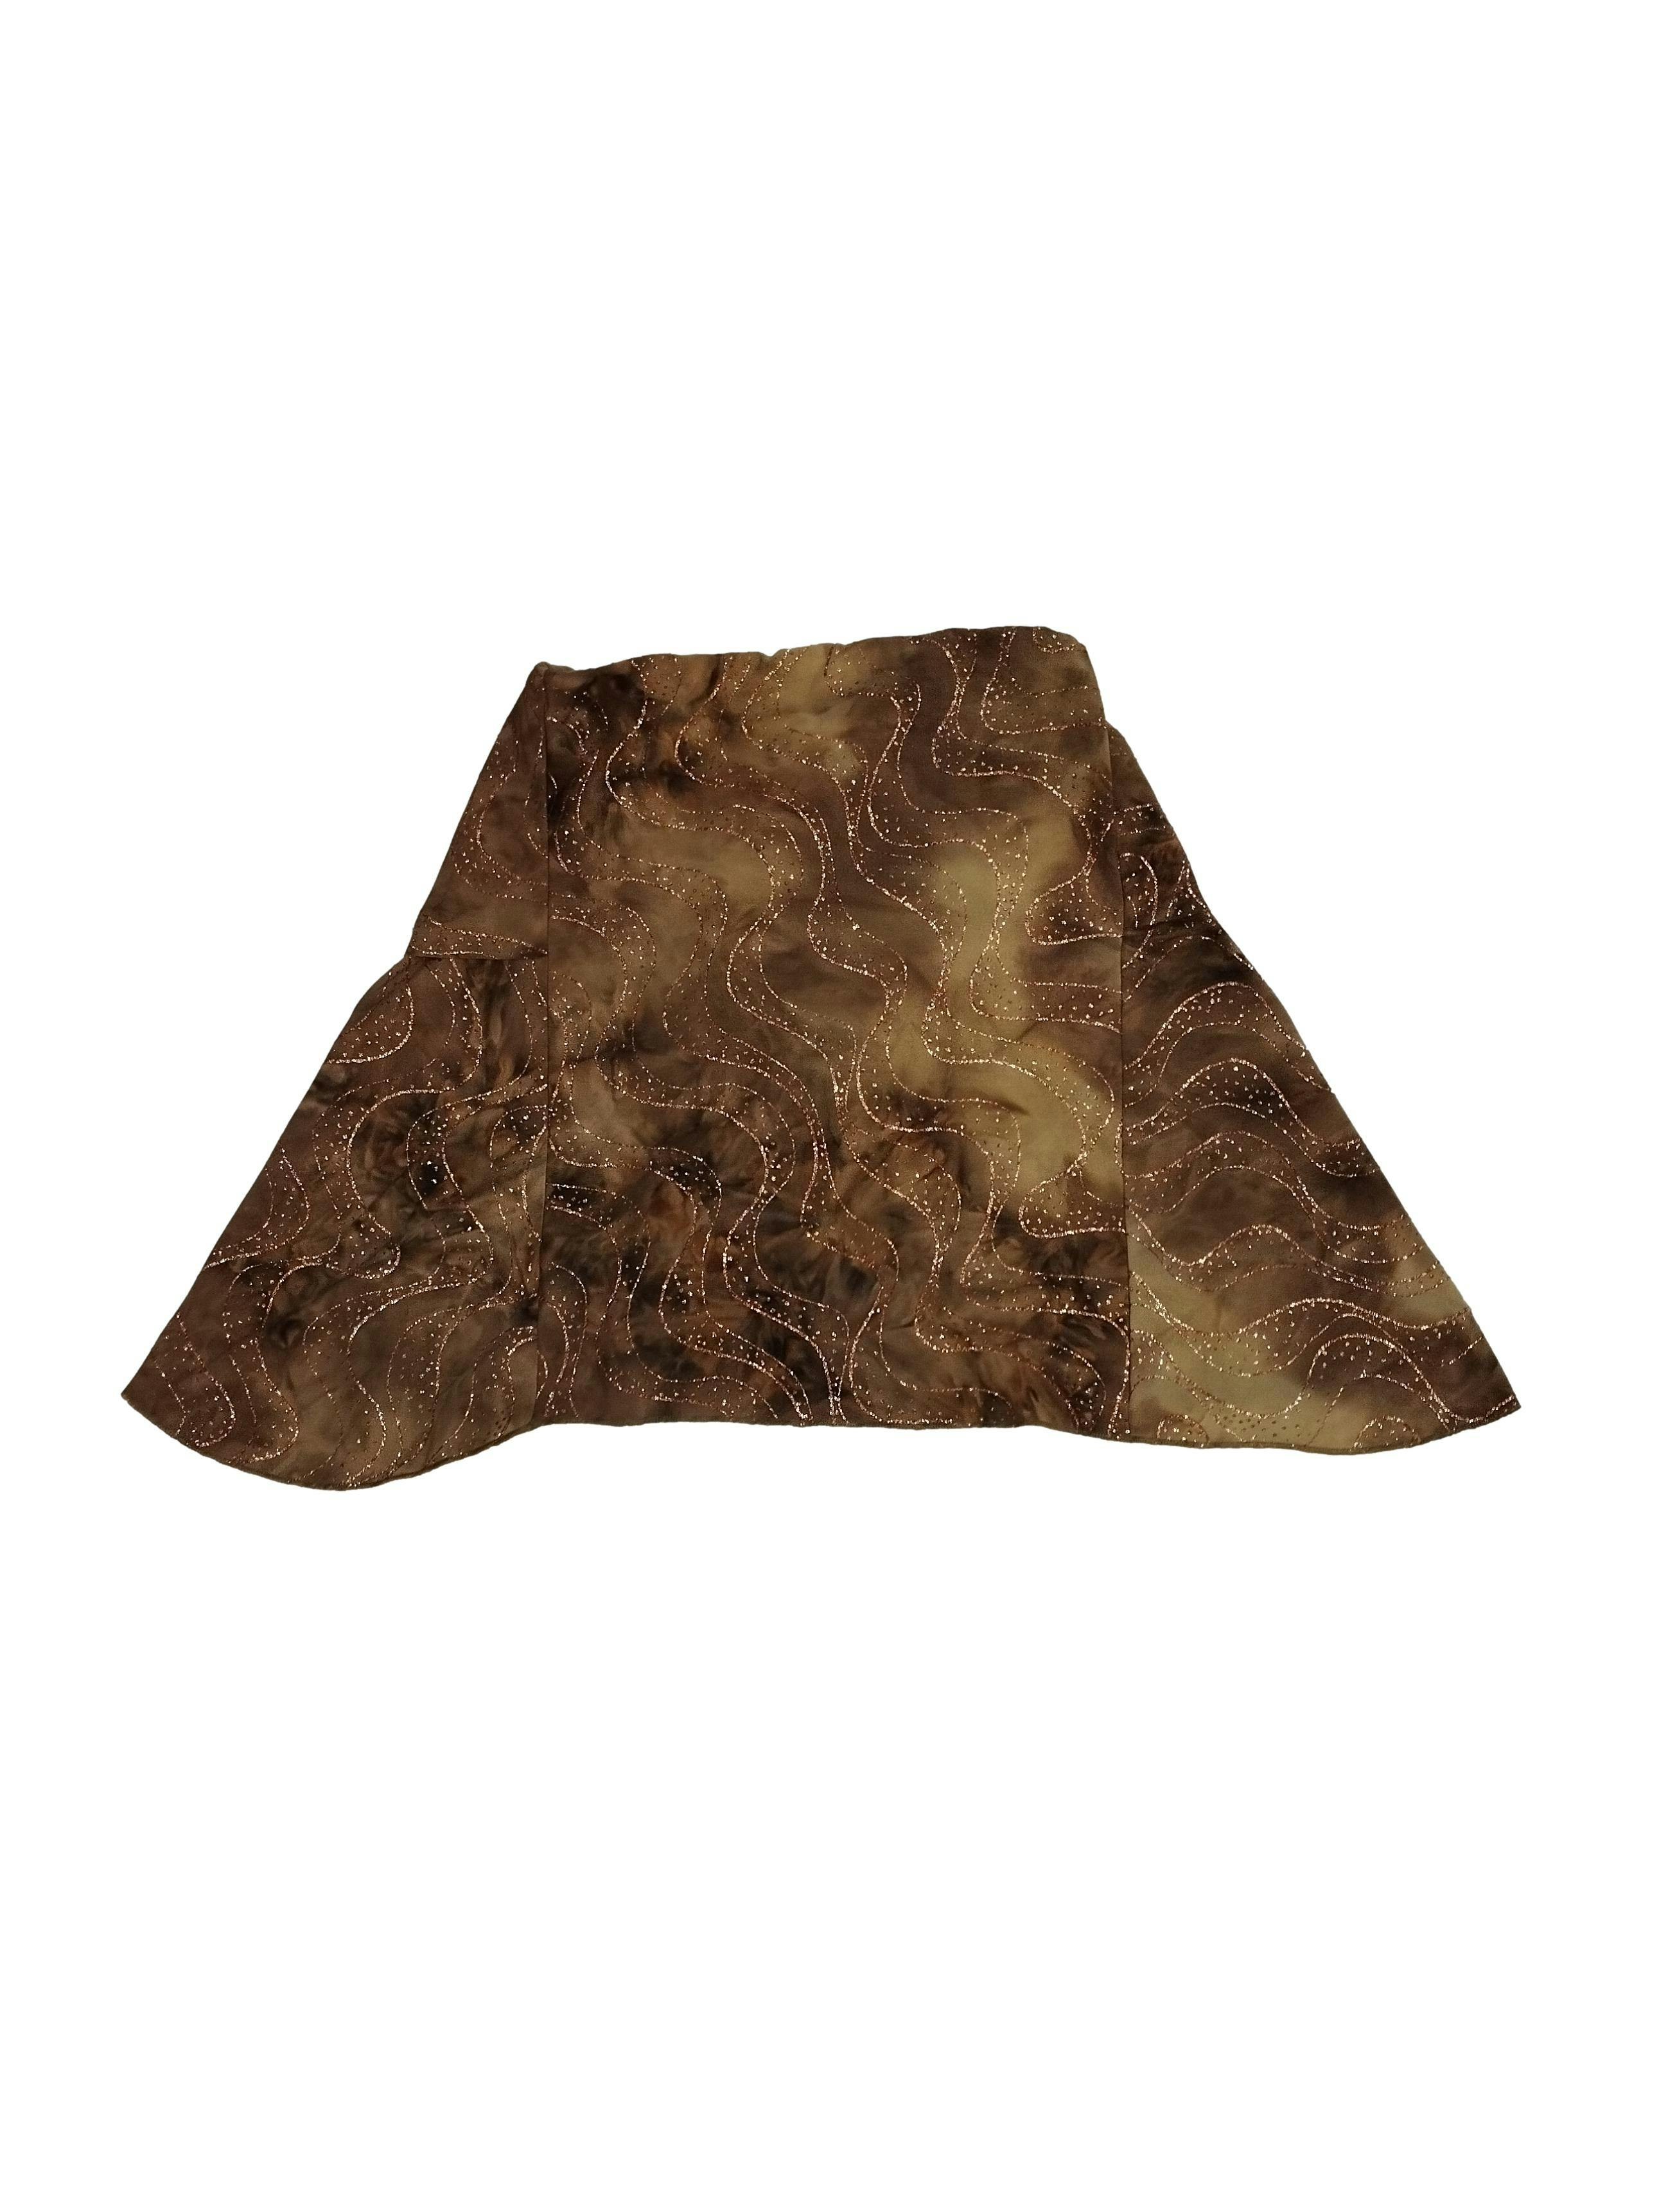 Blusa marrón estilo tie dye con líneas escarchadas y lazos para anudar en el cuello. Busto: 82 cm, Largo: 80 cm